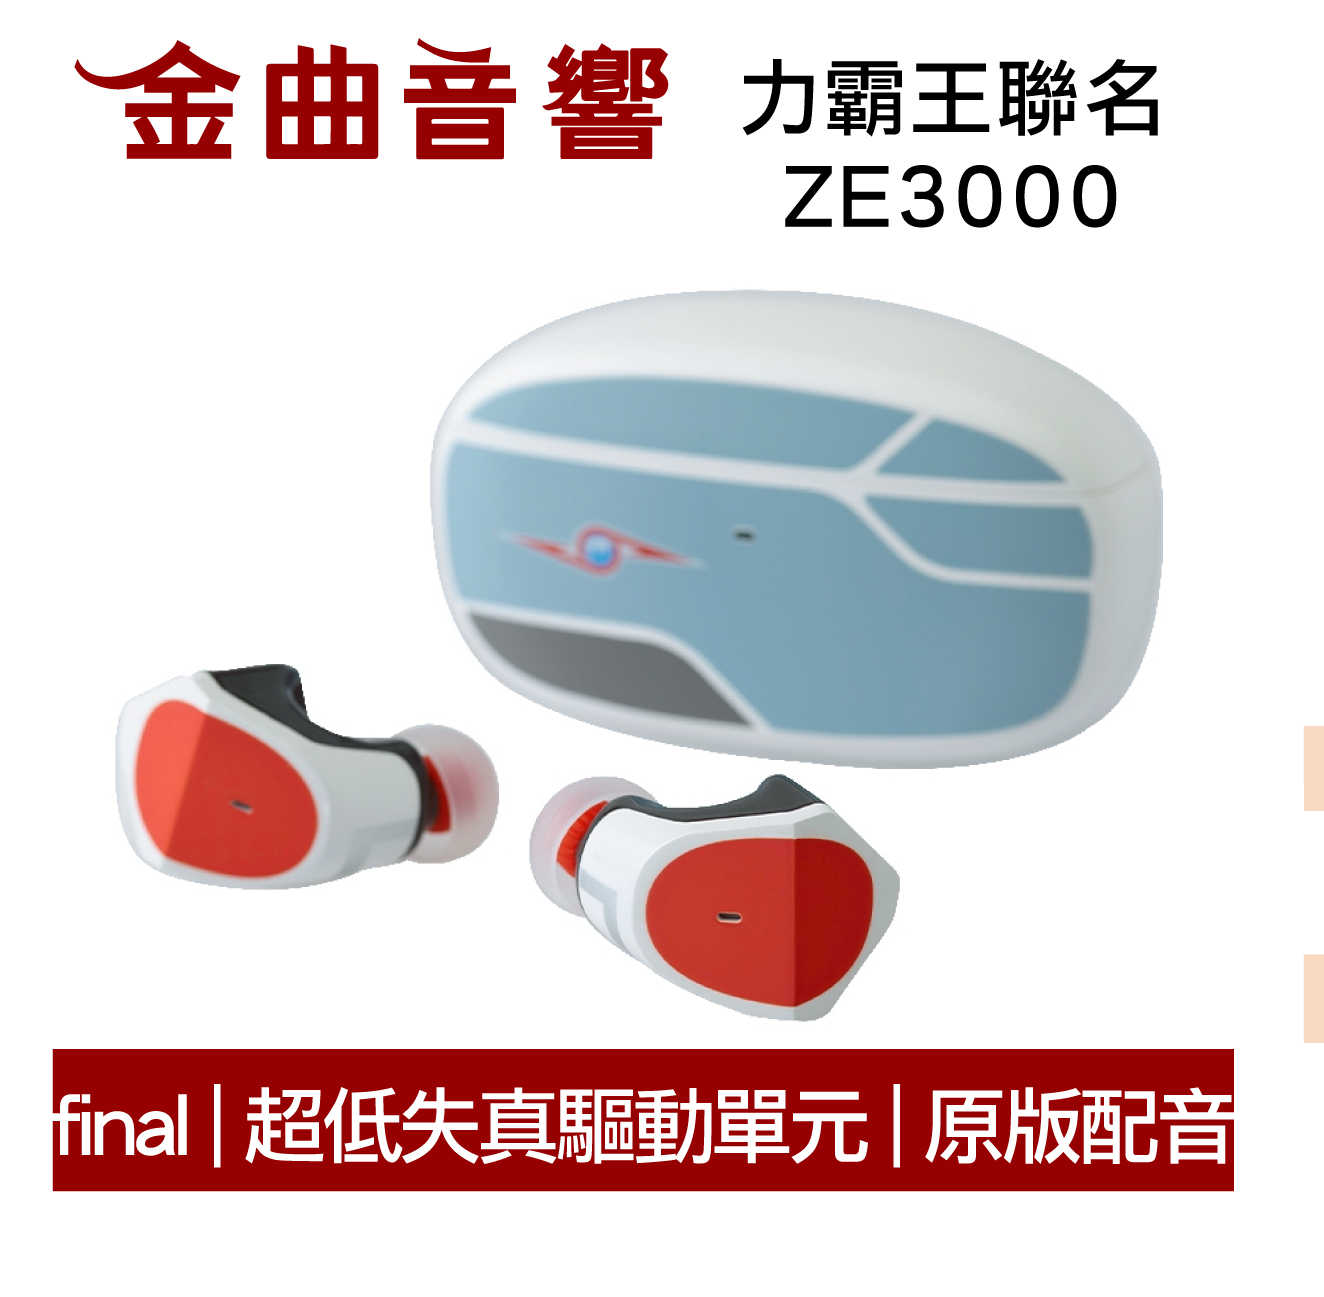 Final x 超人力霸王 聯名 ZE3000 奧特曼 鹹蛋超人 真無線 藍芽耳機 | 金曲音響